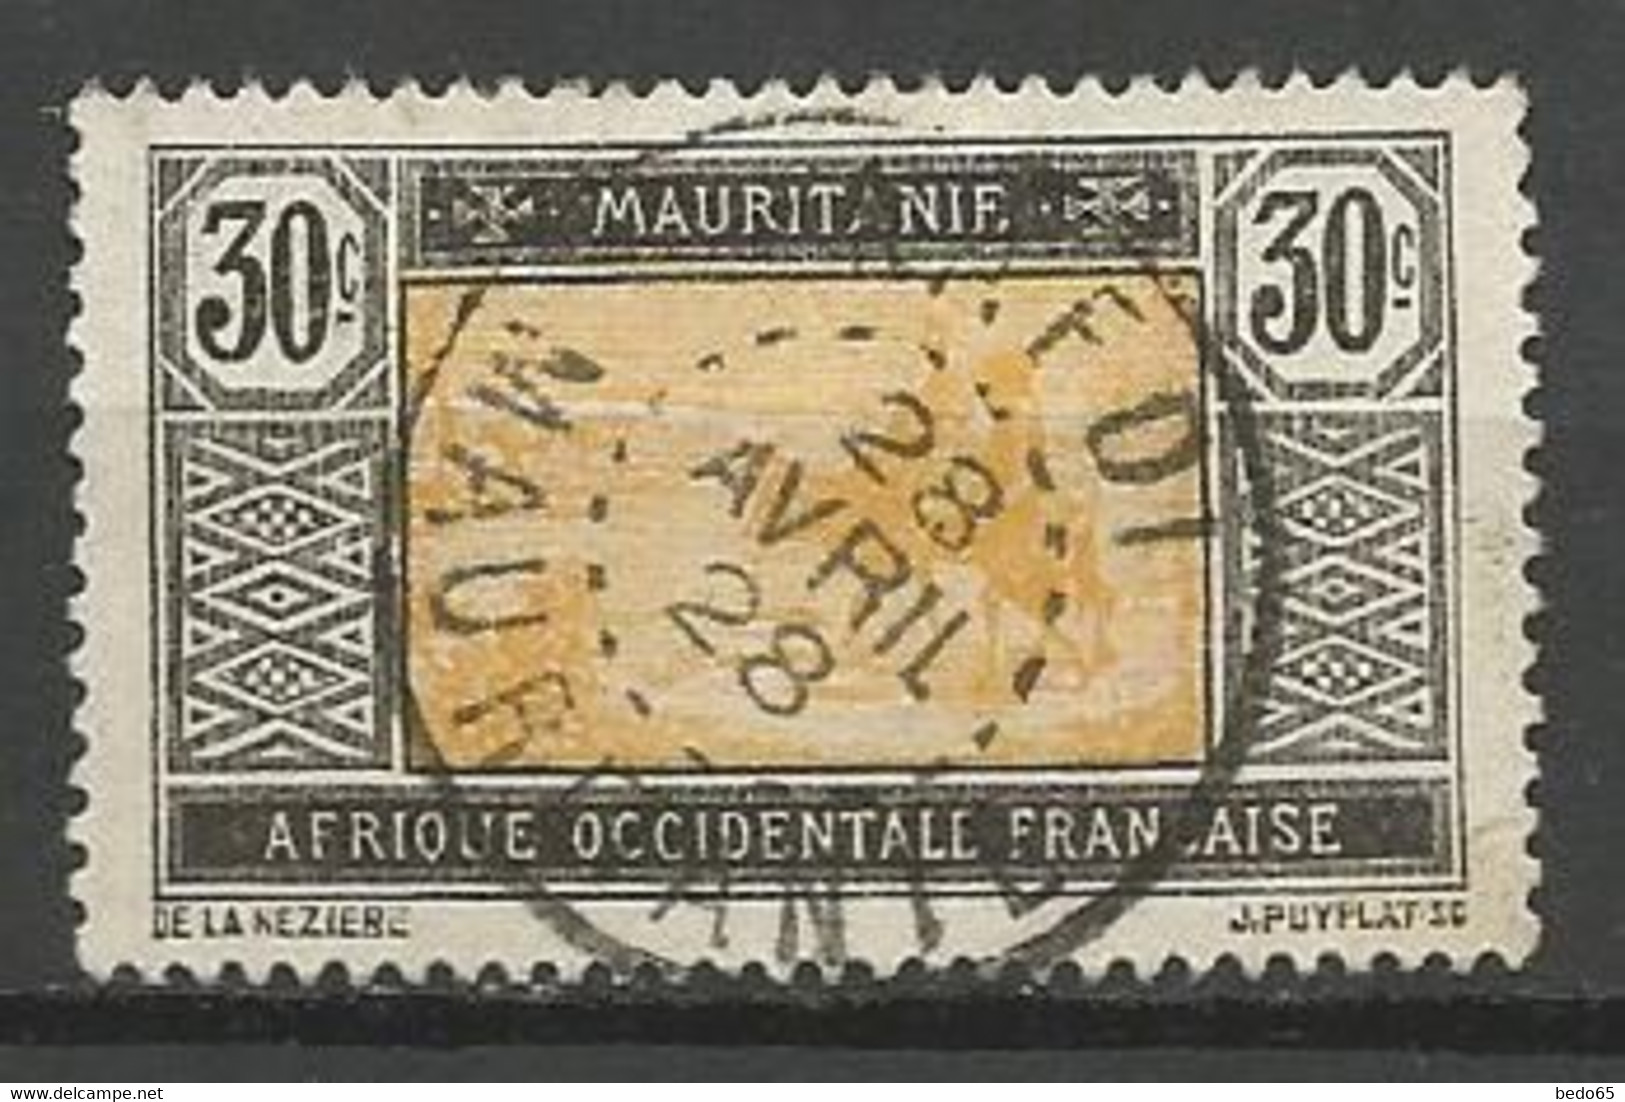 MAURITANIE N° 44 CACHET KAEDI - Used Stamps